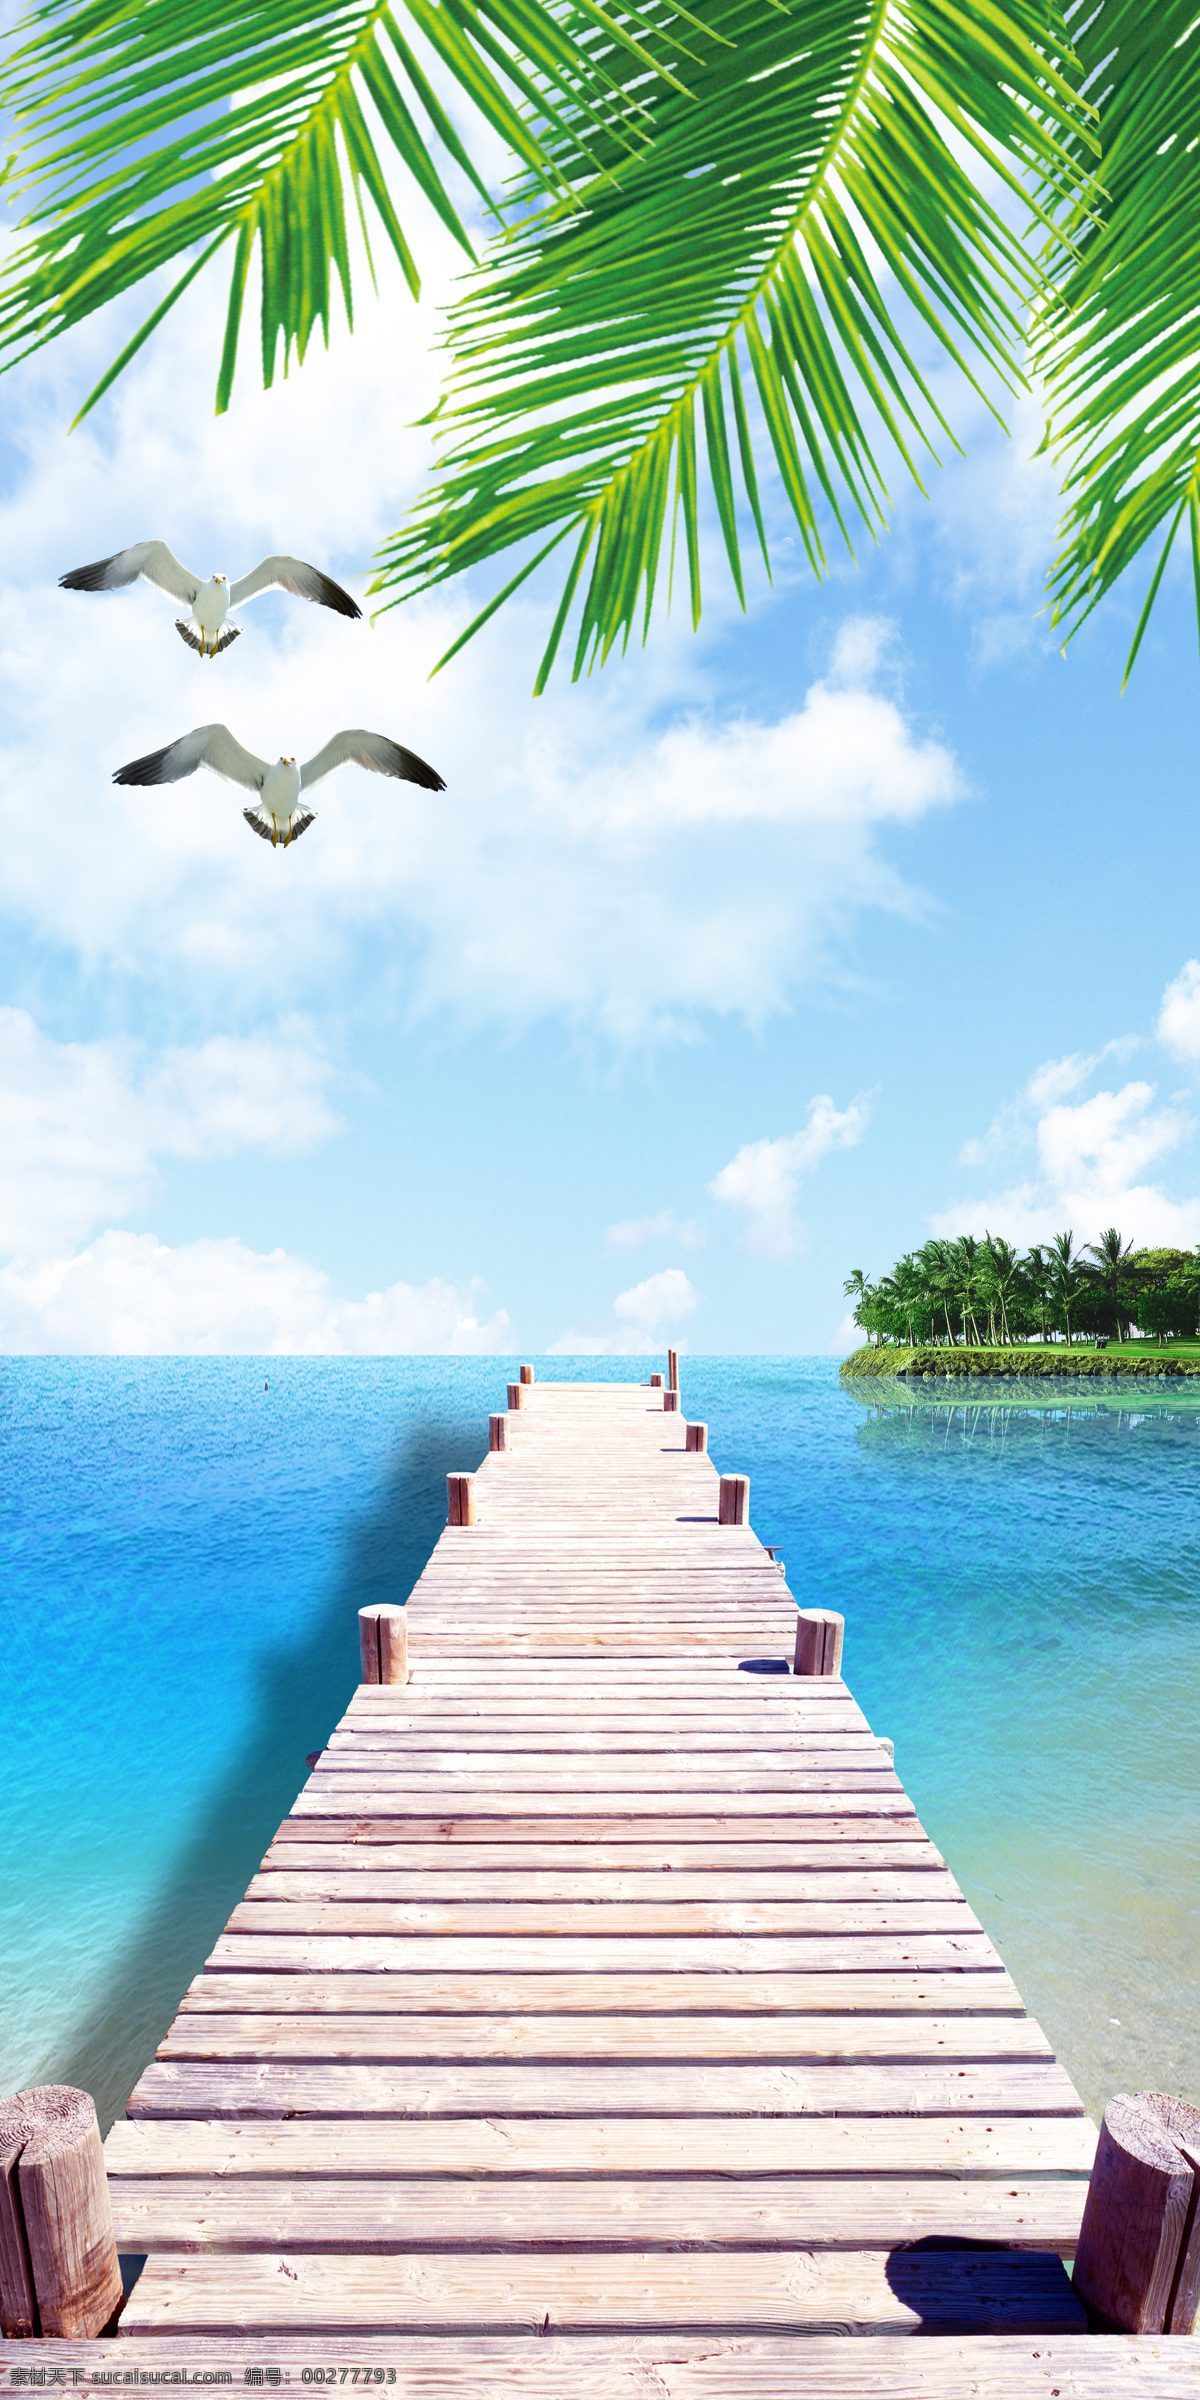 玄关 大海 椰树 背景 墙 玄关海景 风景大海 椰树沙滩 小岛 海鸥 木桥 蓝天白云